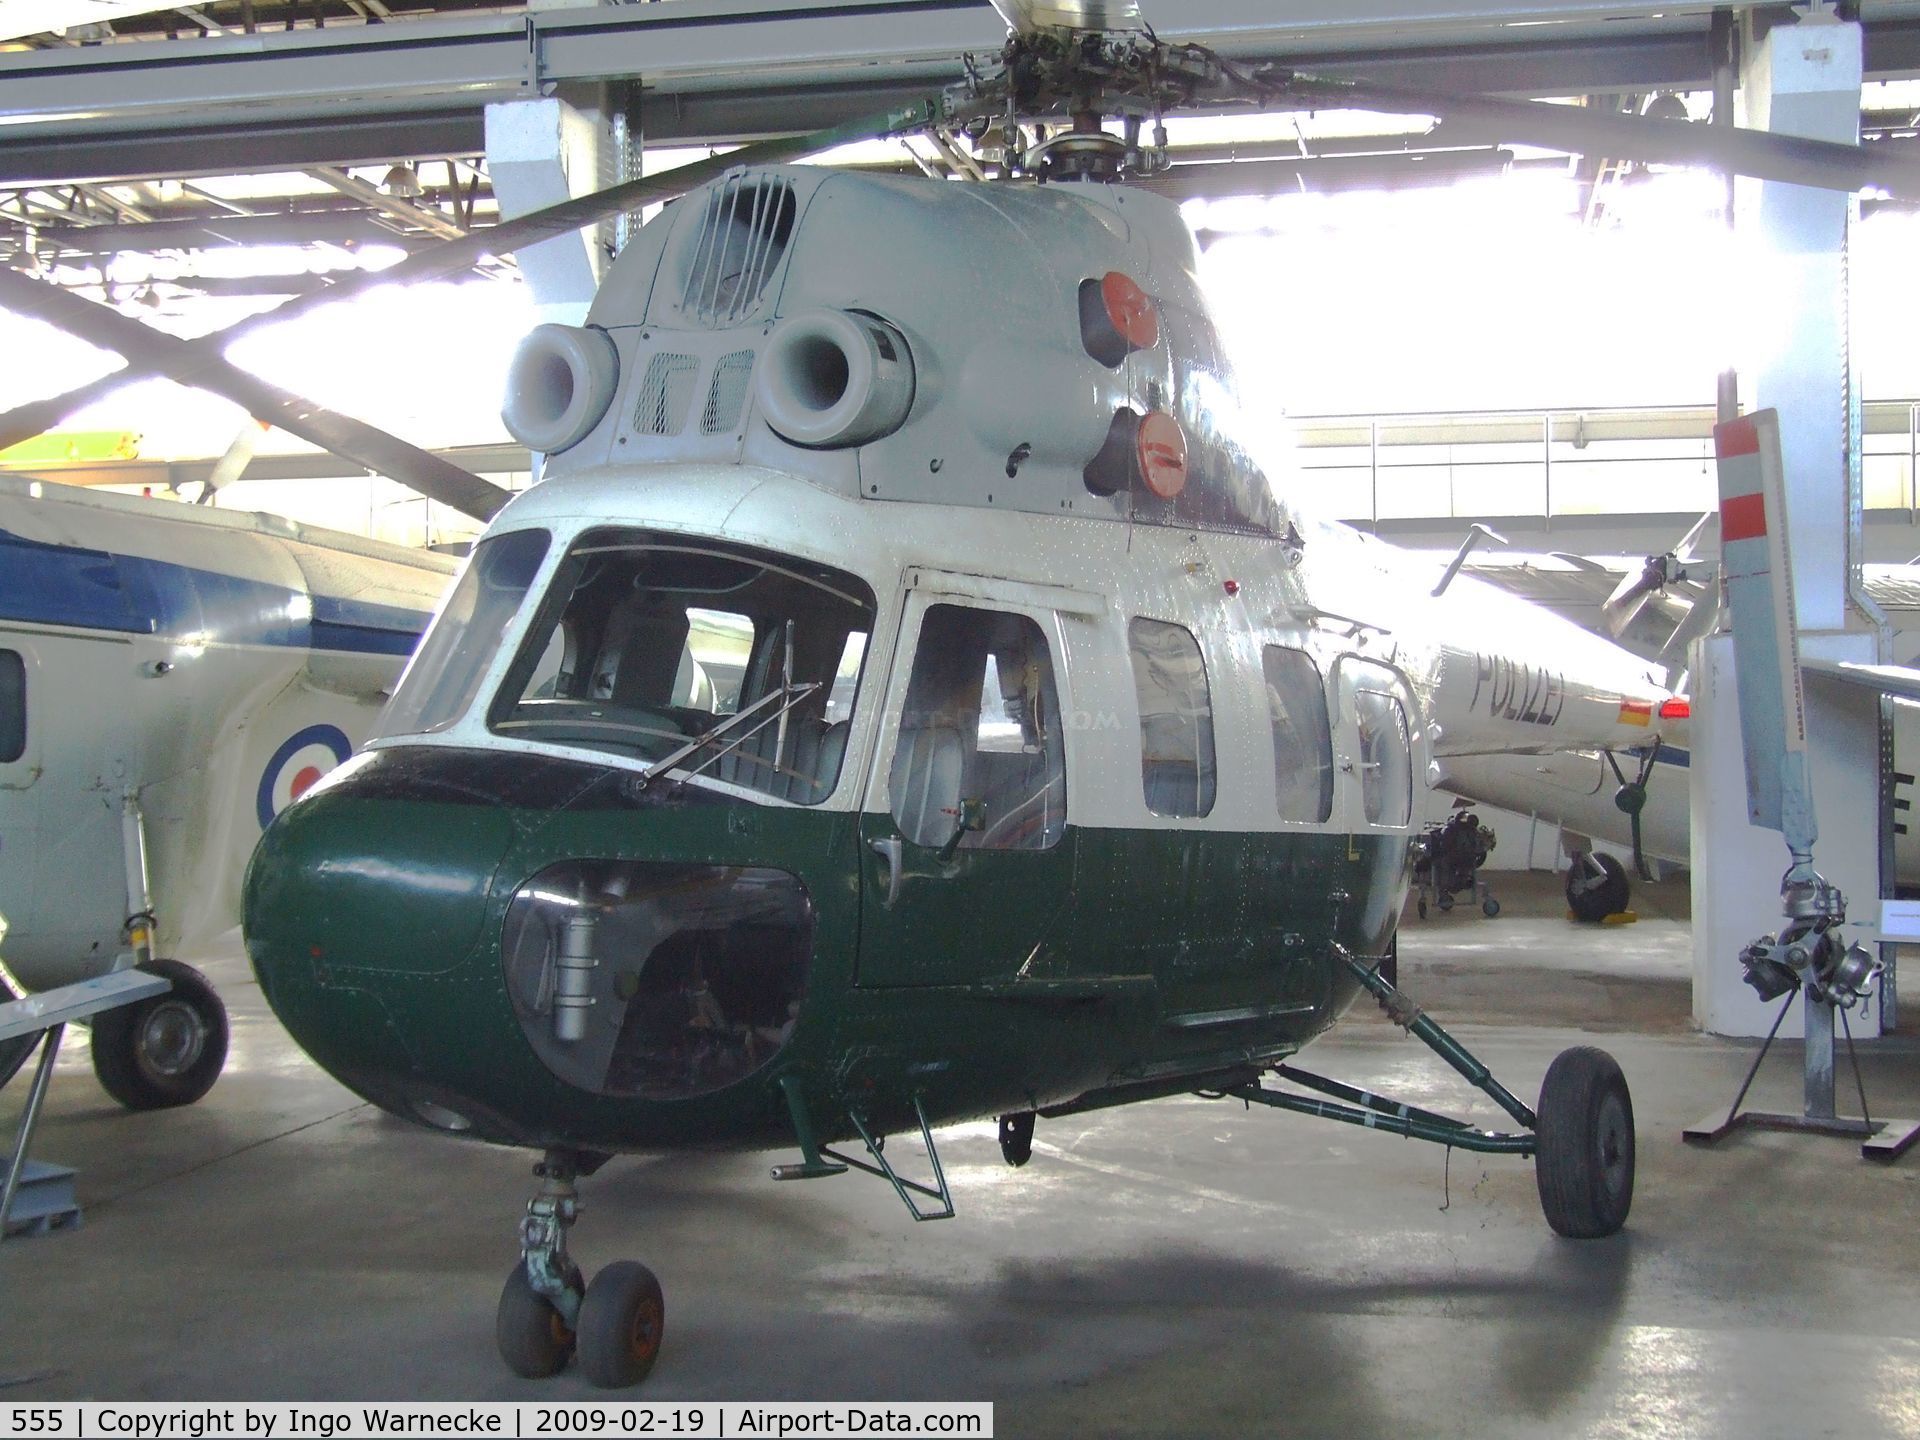 555, Mil (PZL-Swidnik) Mi-2U C/N 543620074, Mil (PZL-Swidnik) Mi-2U HOPLITE at the Museum für Luftfahrt und Technik, Wernigerode